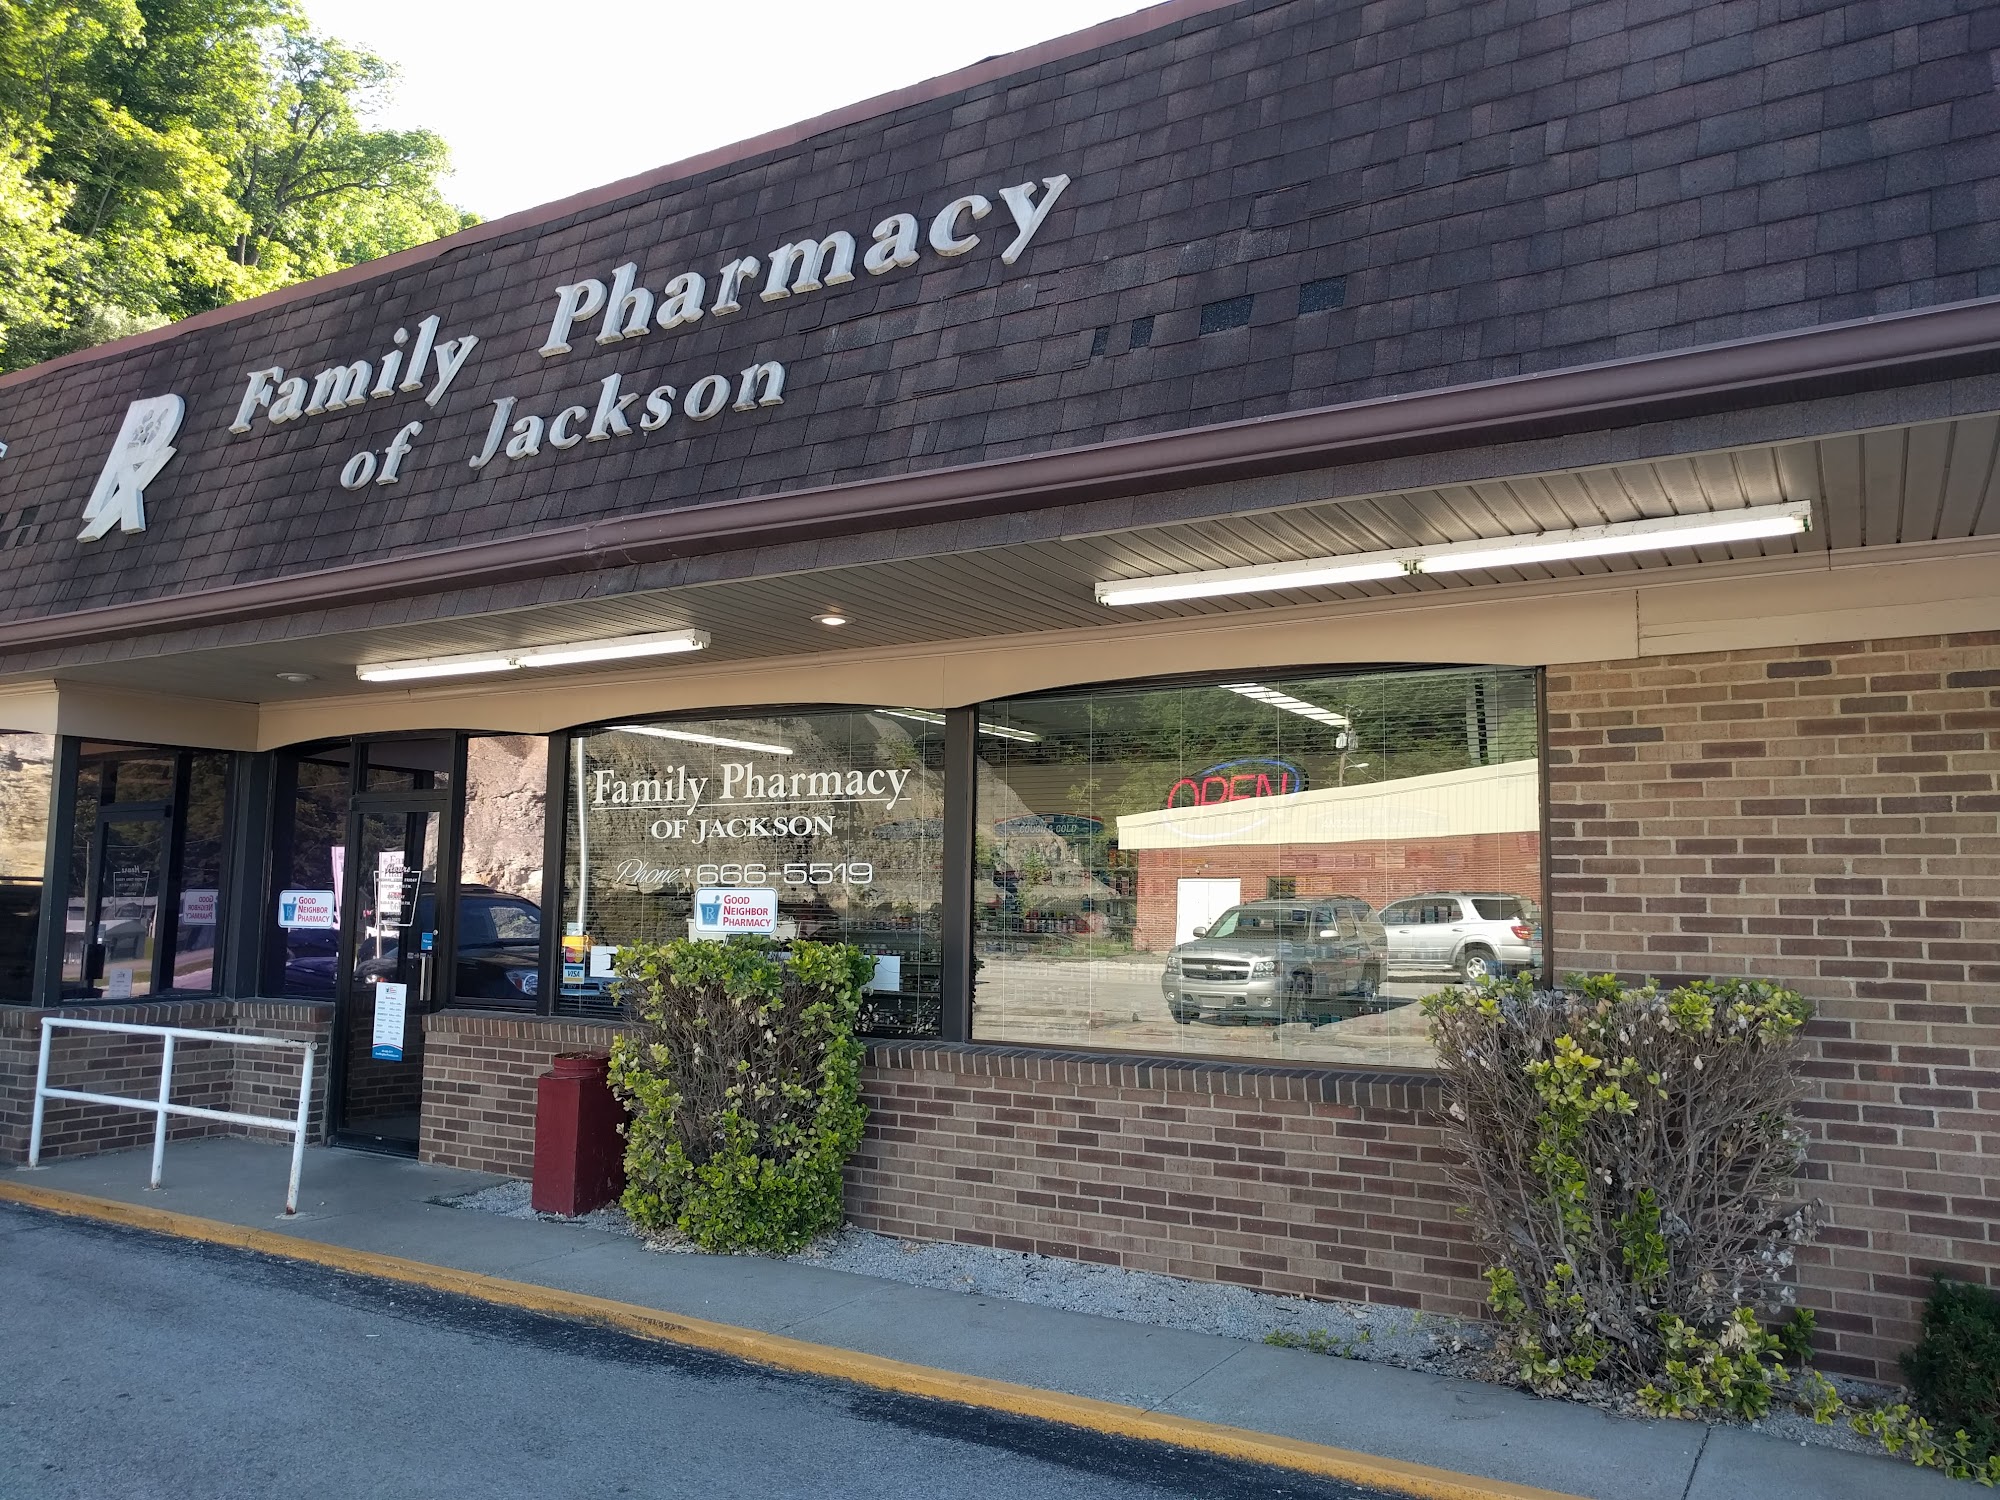 Family Pharmacy of Jackson